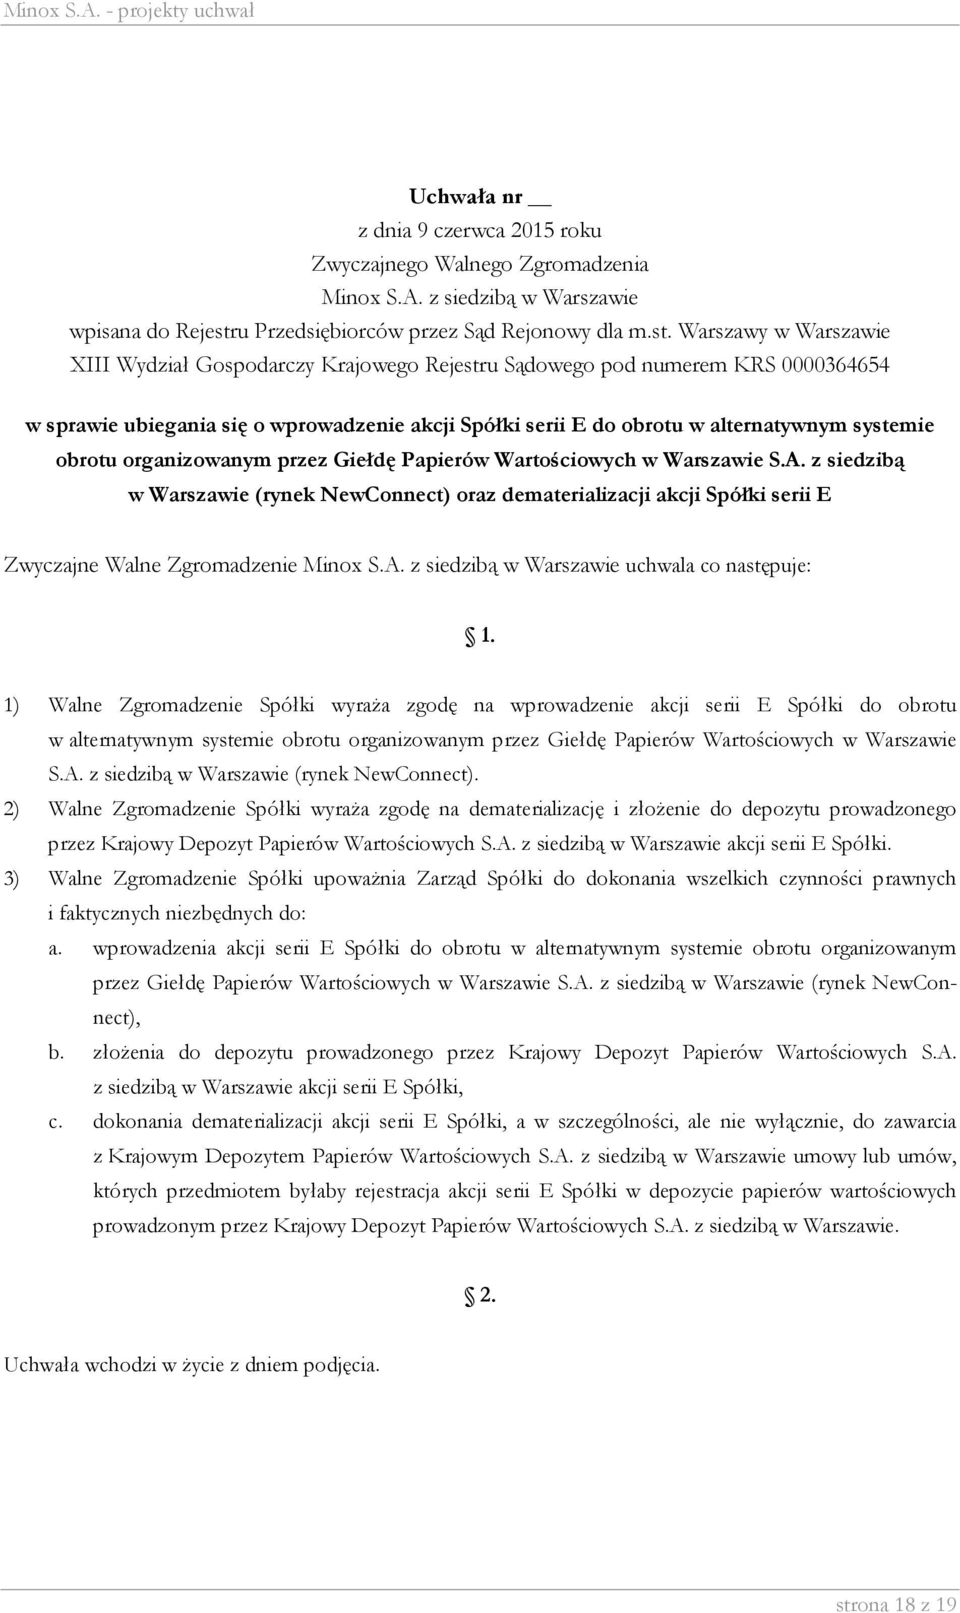 serii E Spółki do obrotu w alternatywnym systemie obrotu organizowanym przez Giełdę Papierów Wartościowych w Warszawie S.A. z siedzibą w Warszawie (rynek NewConnect).